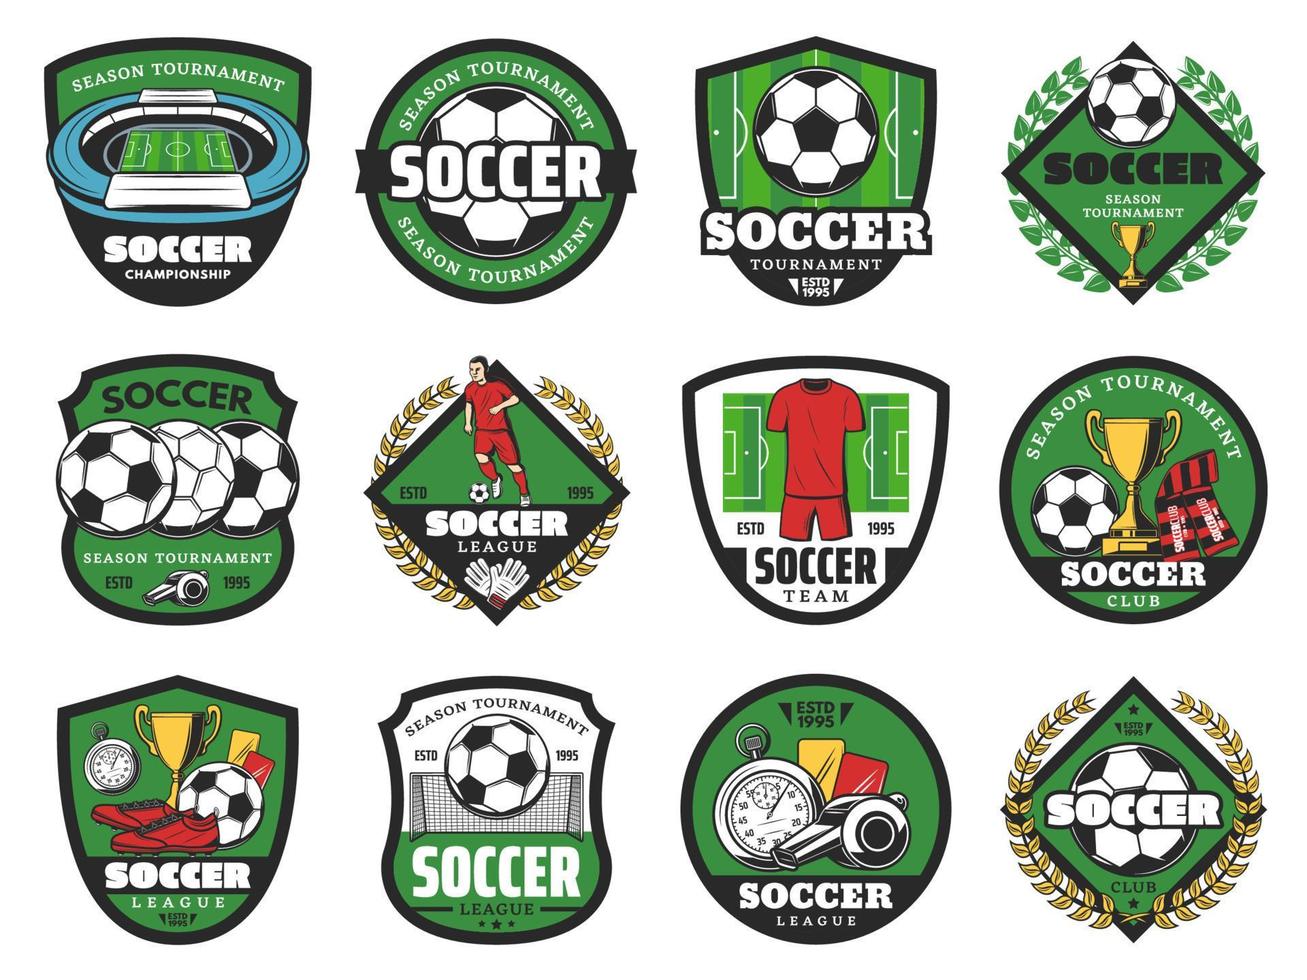 Fußballsport- und Fußballsymbole vektor